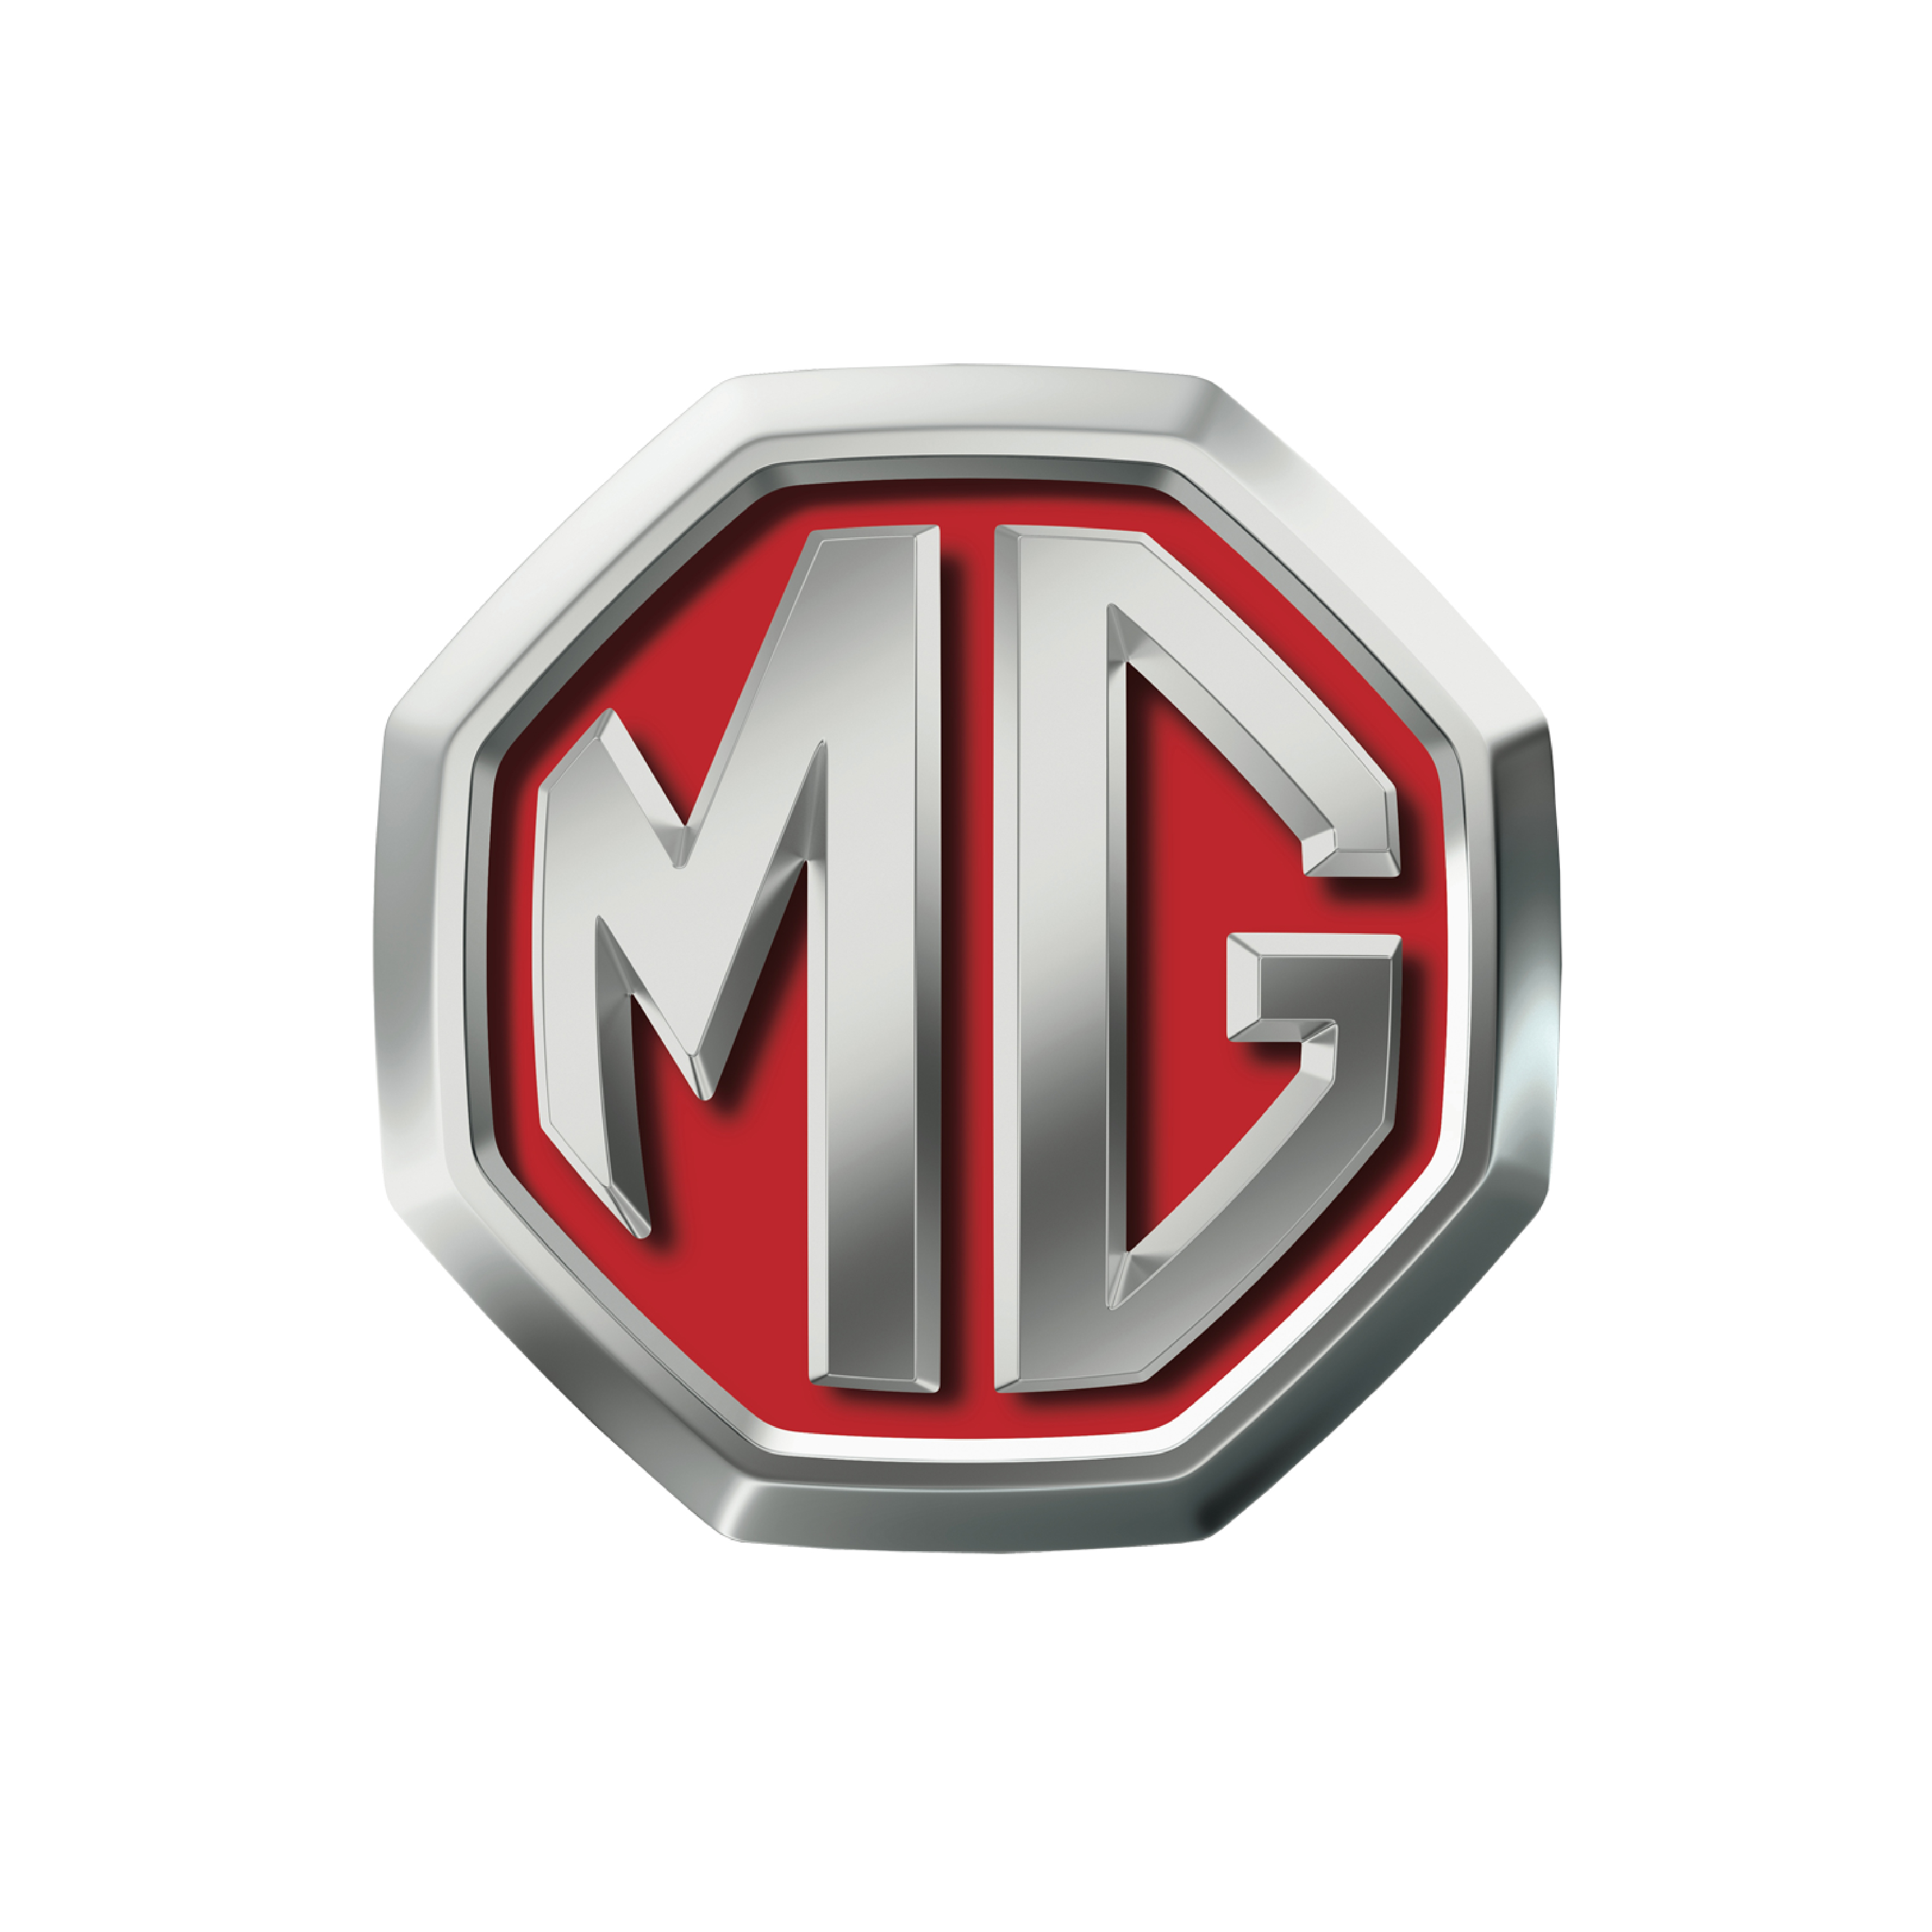 MG 5